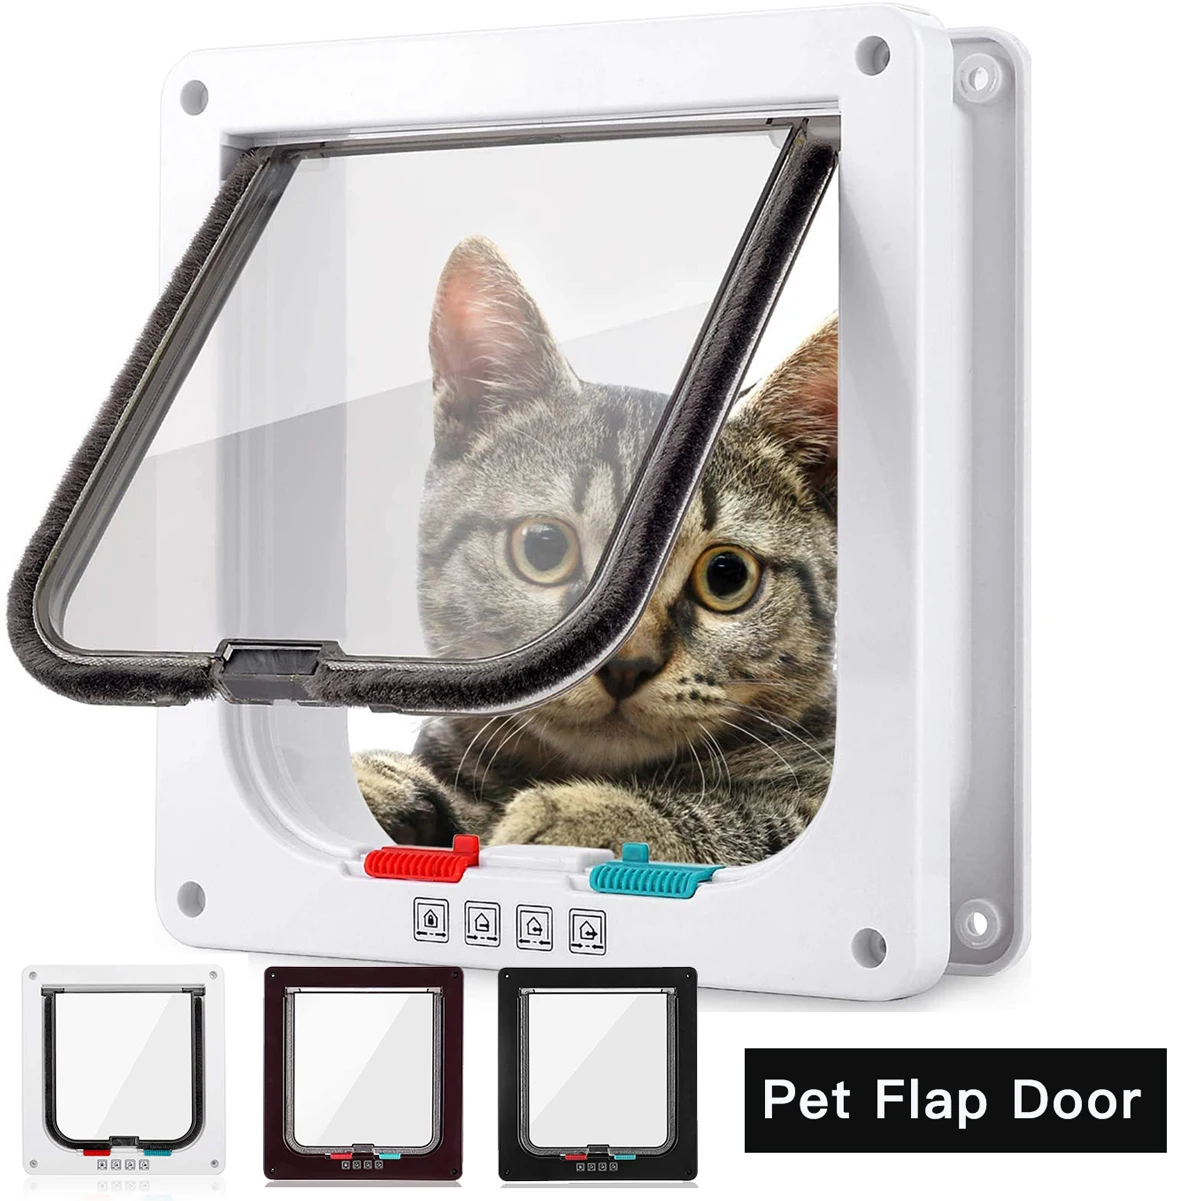 

Dog Cat Flap Door with 4 Way Security Lock Flap Door for Dog Cats Kitten ABS Plastic Small Pet Gate Door Kit Cat Dogs Flap Doors